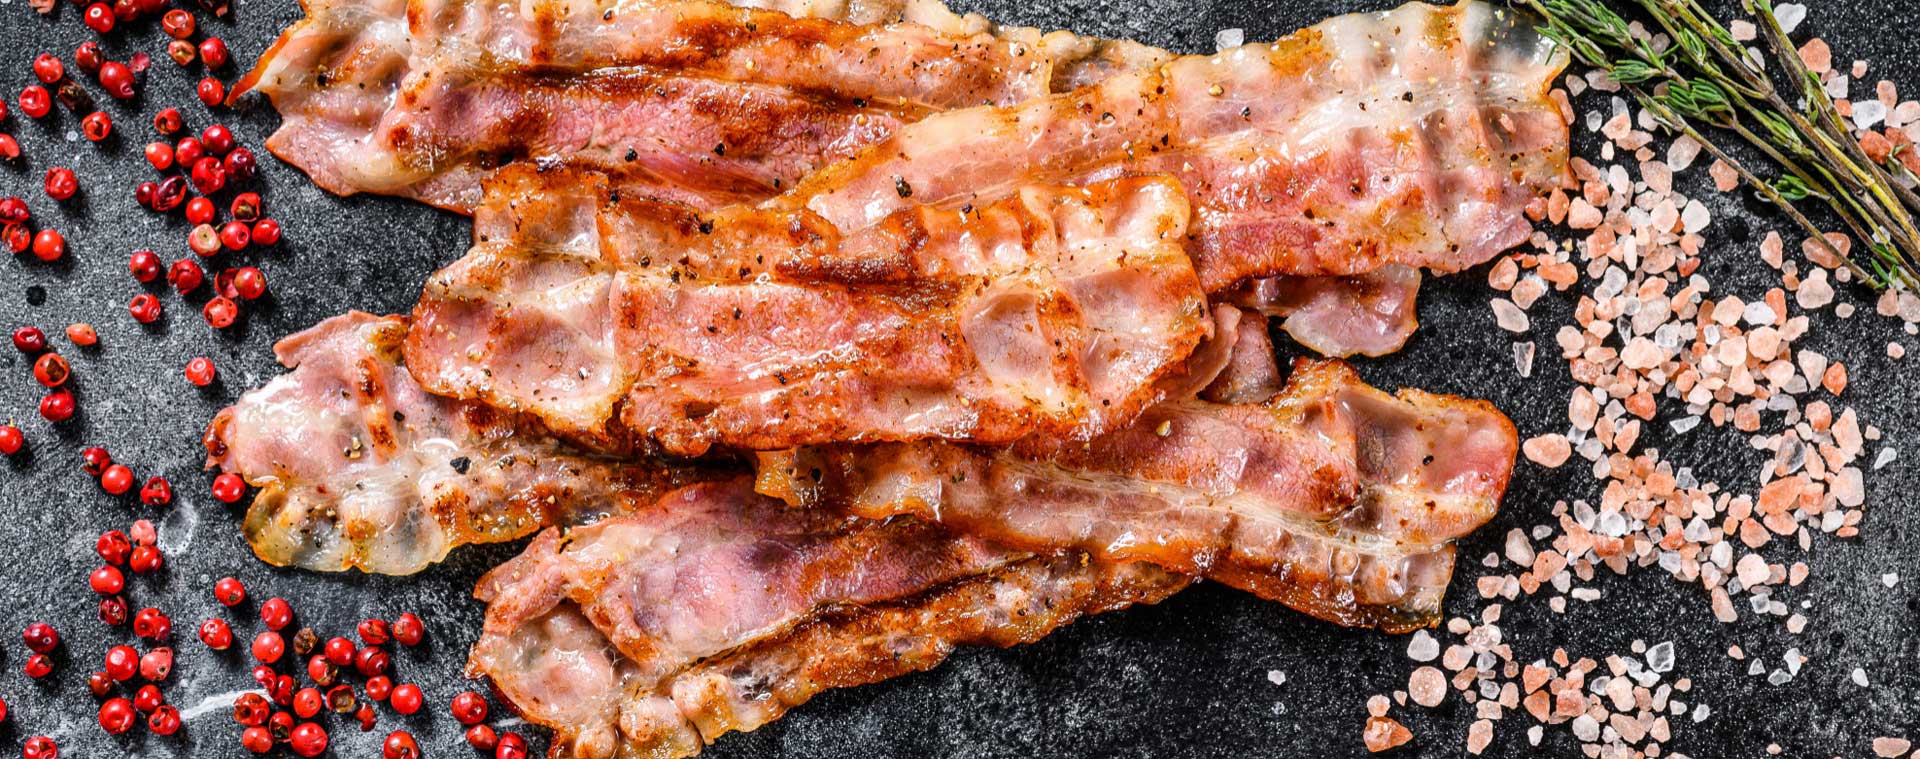 Bacon aus der Heißluftfritteuse